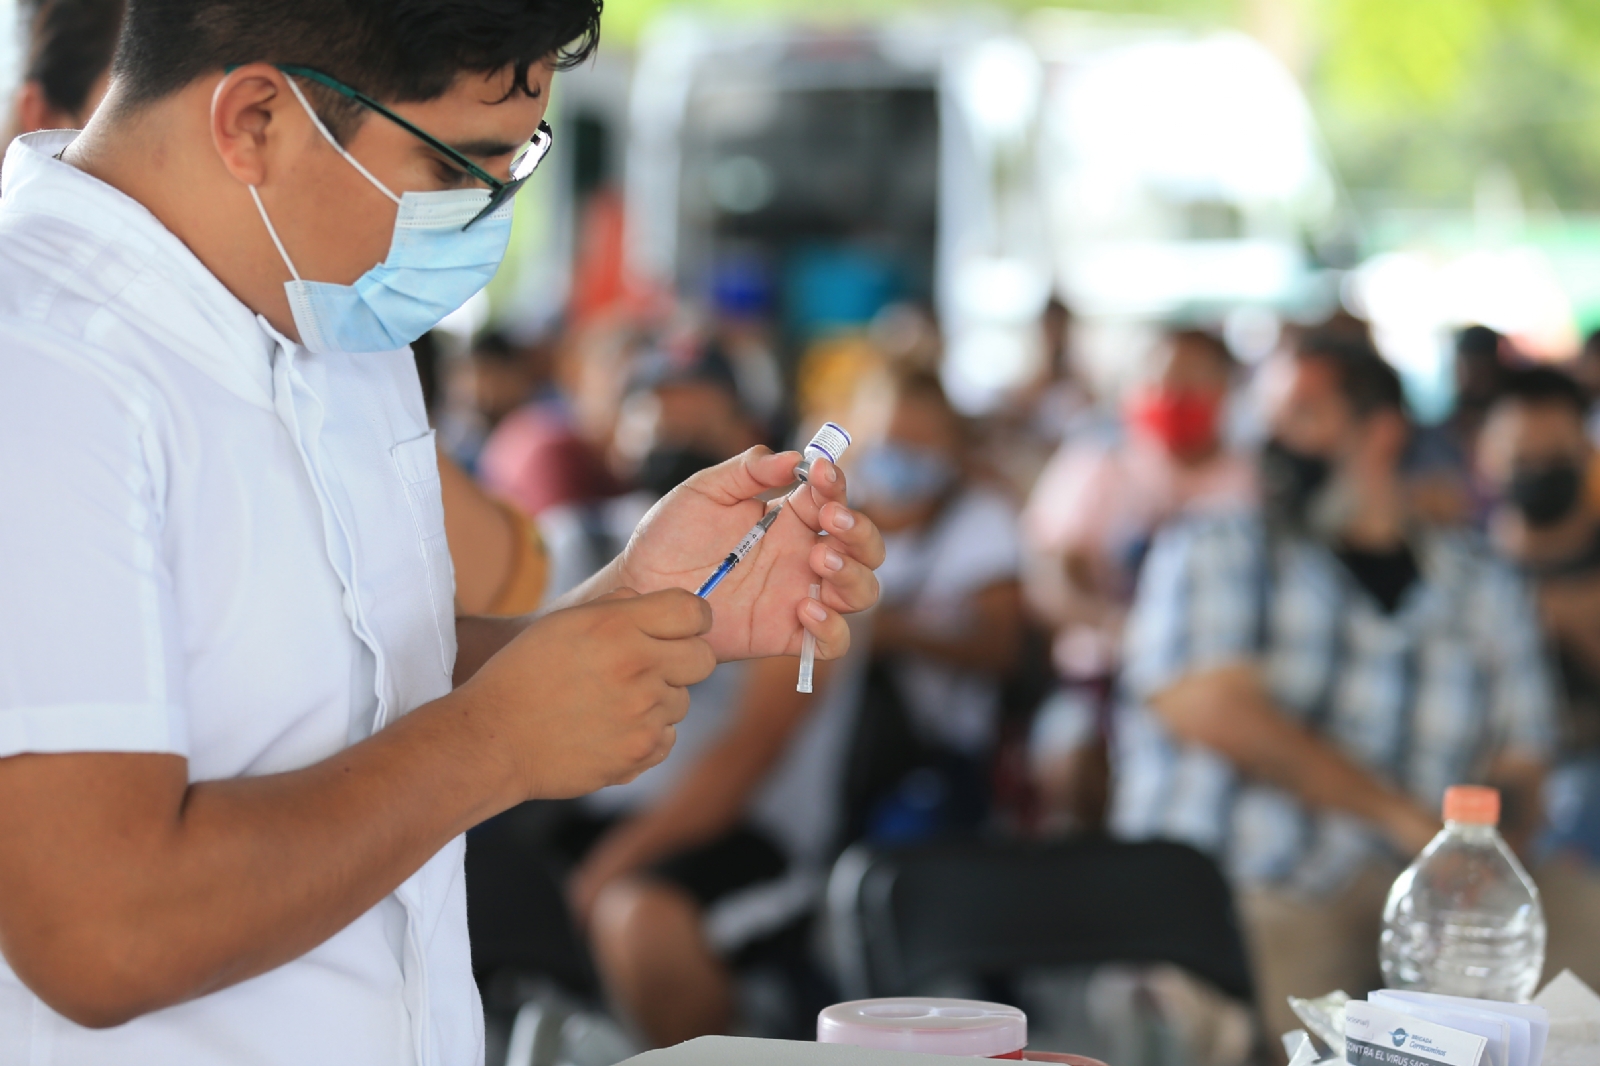 Vacunarán a menores de 15 a 17 años en Cancún: Estos serán los módulos